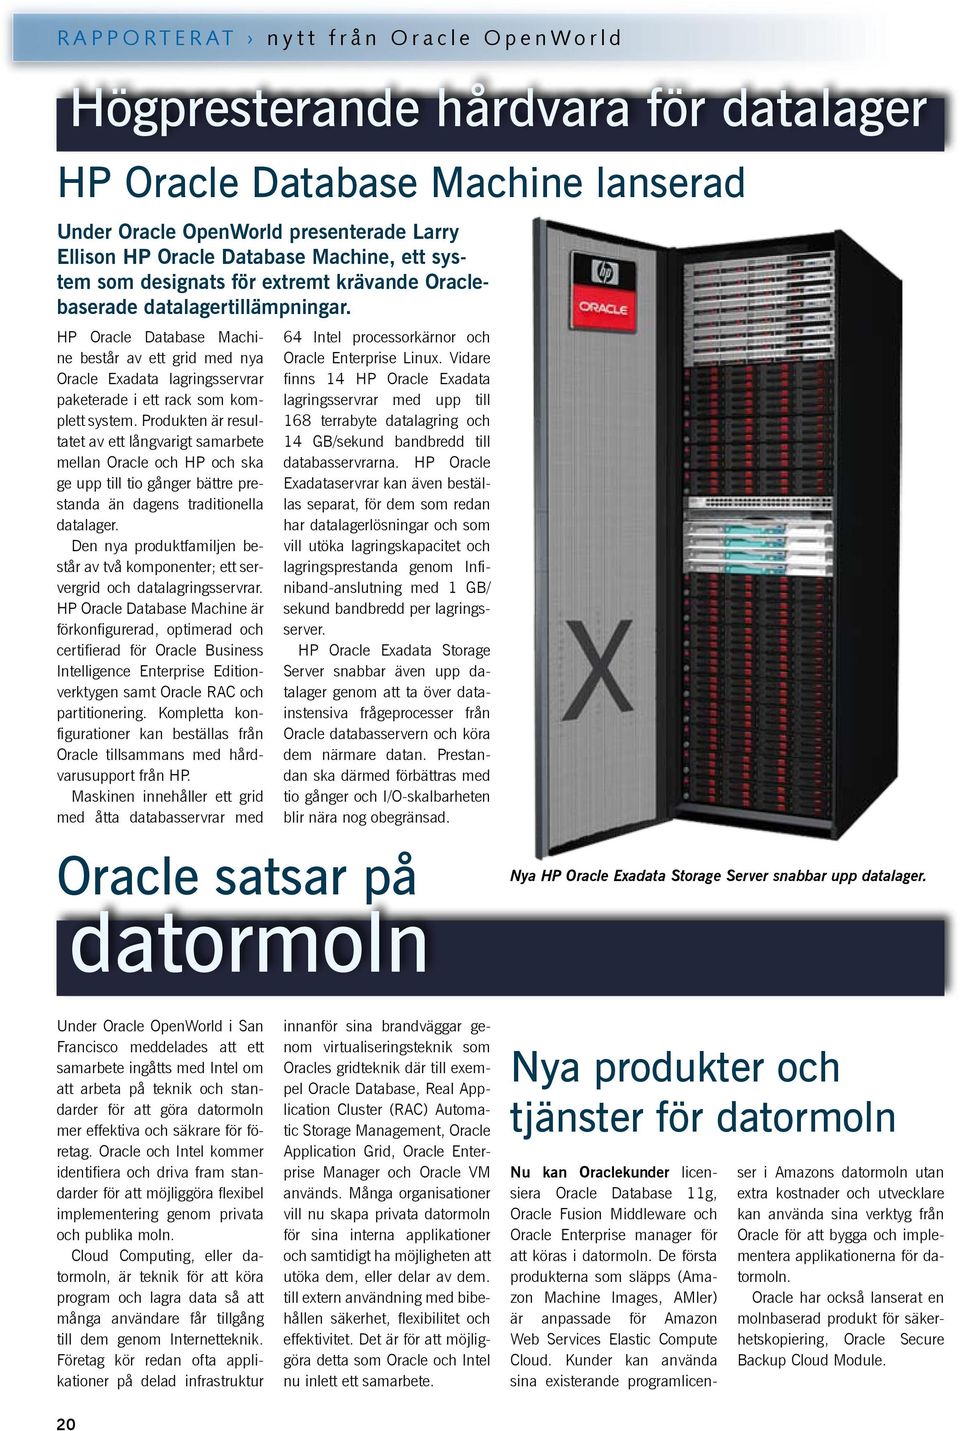 HP Oracle Database Machine består av ett grid med nya Oracle Exadata lagringsservrar paketerade i ett rack som komplett system.